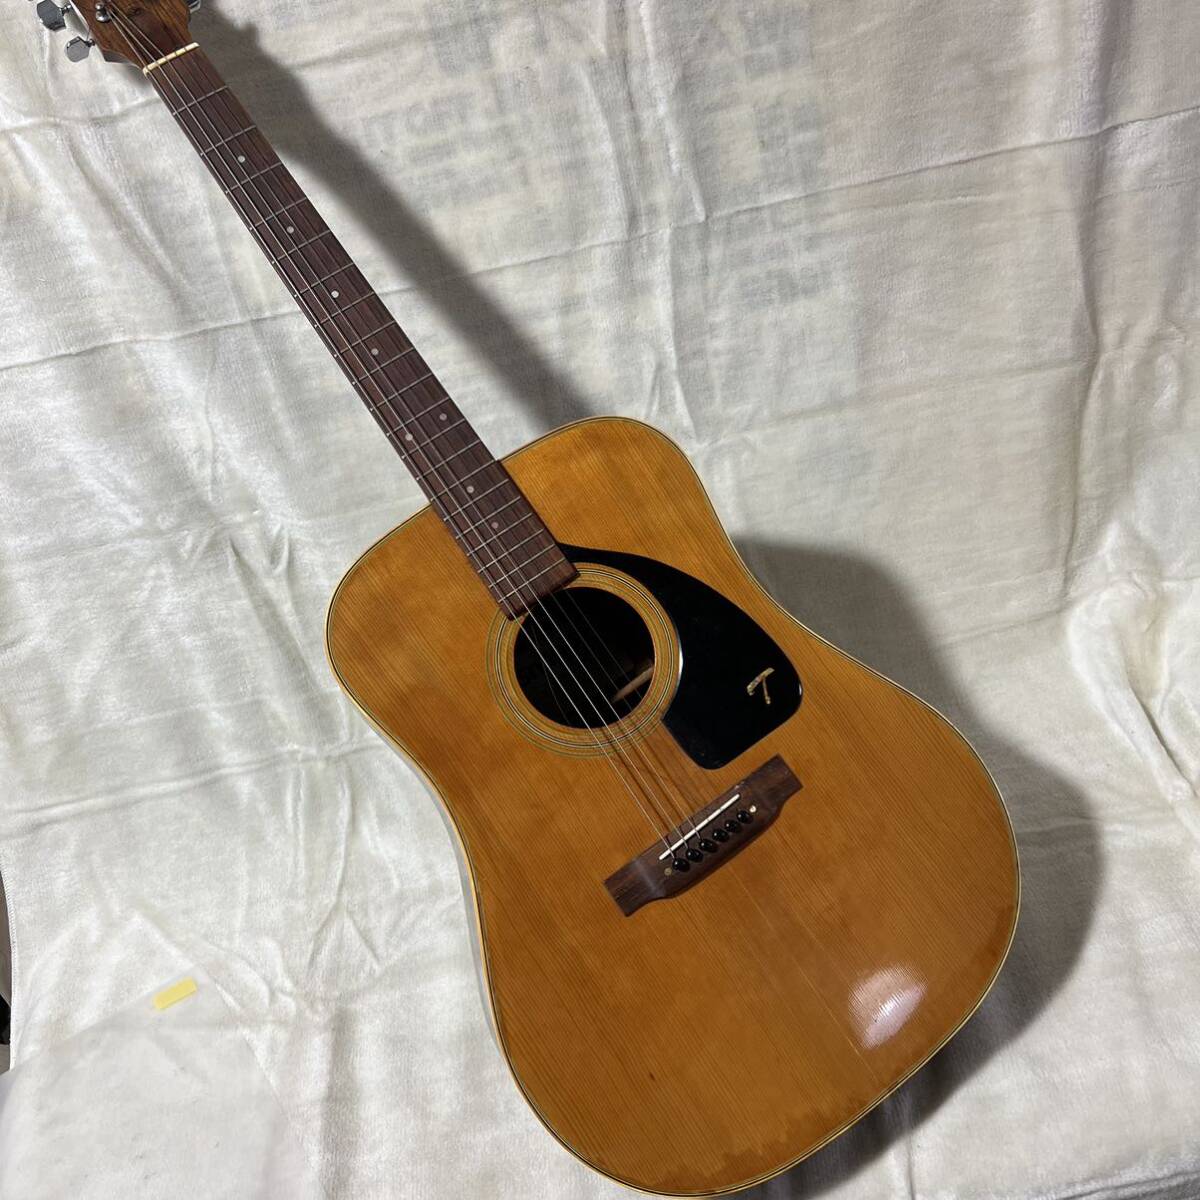 C818 昭和レトロ Snappy スナッピー アコースティックギター FG-110 ギター コレクション 音出し確認無しの画像1